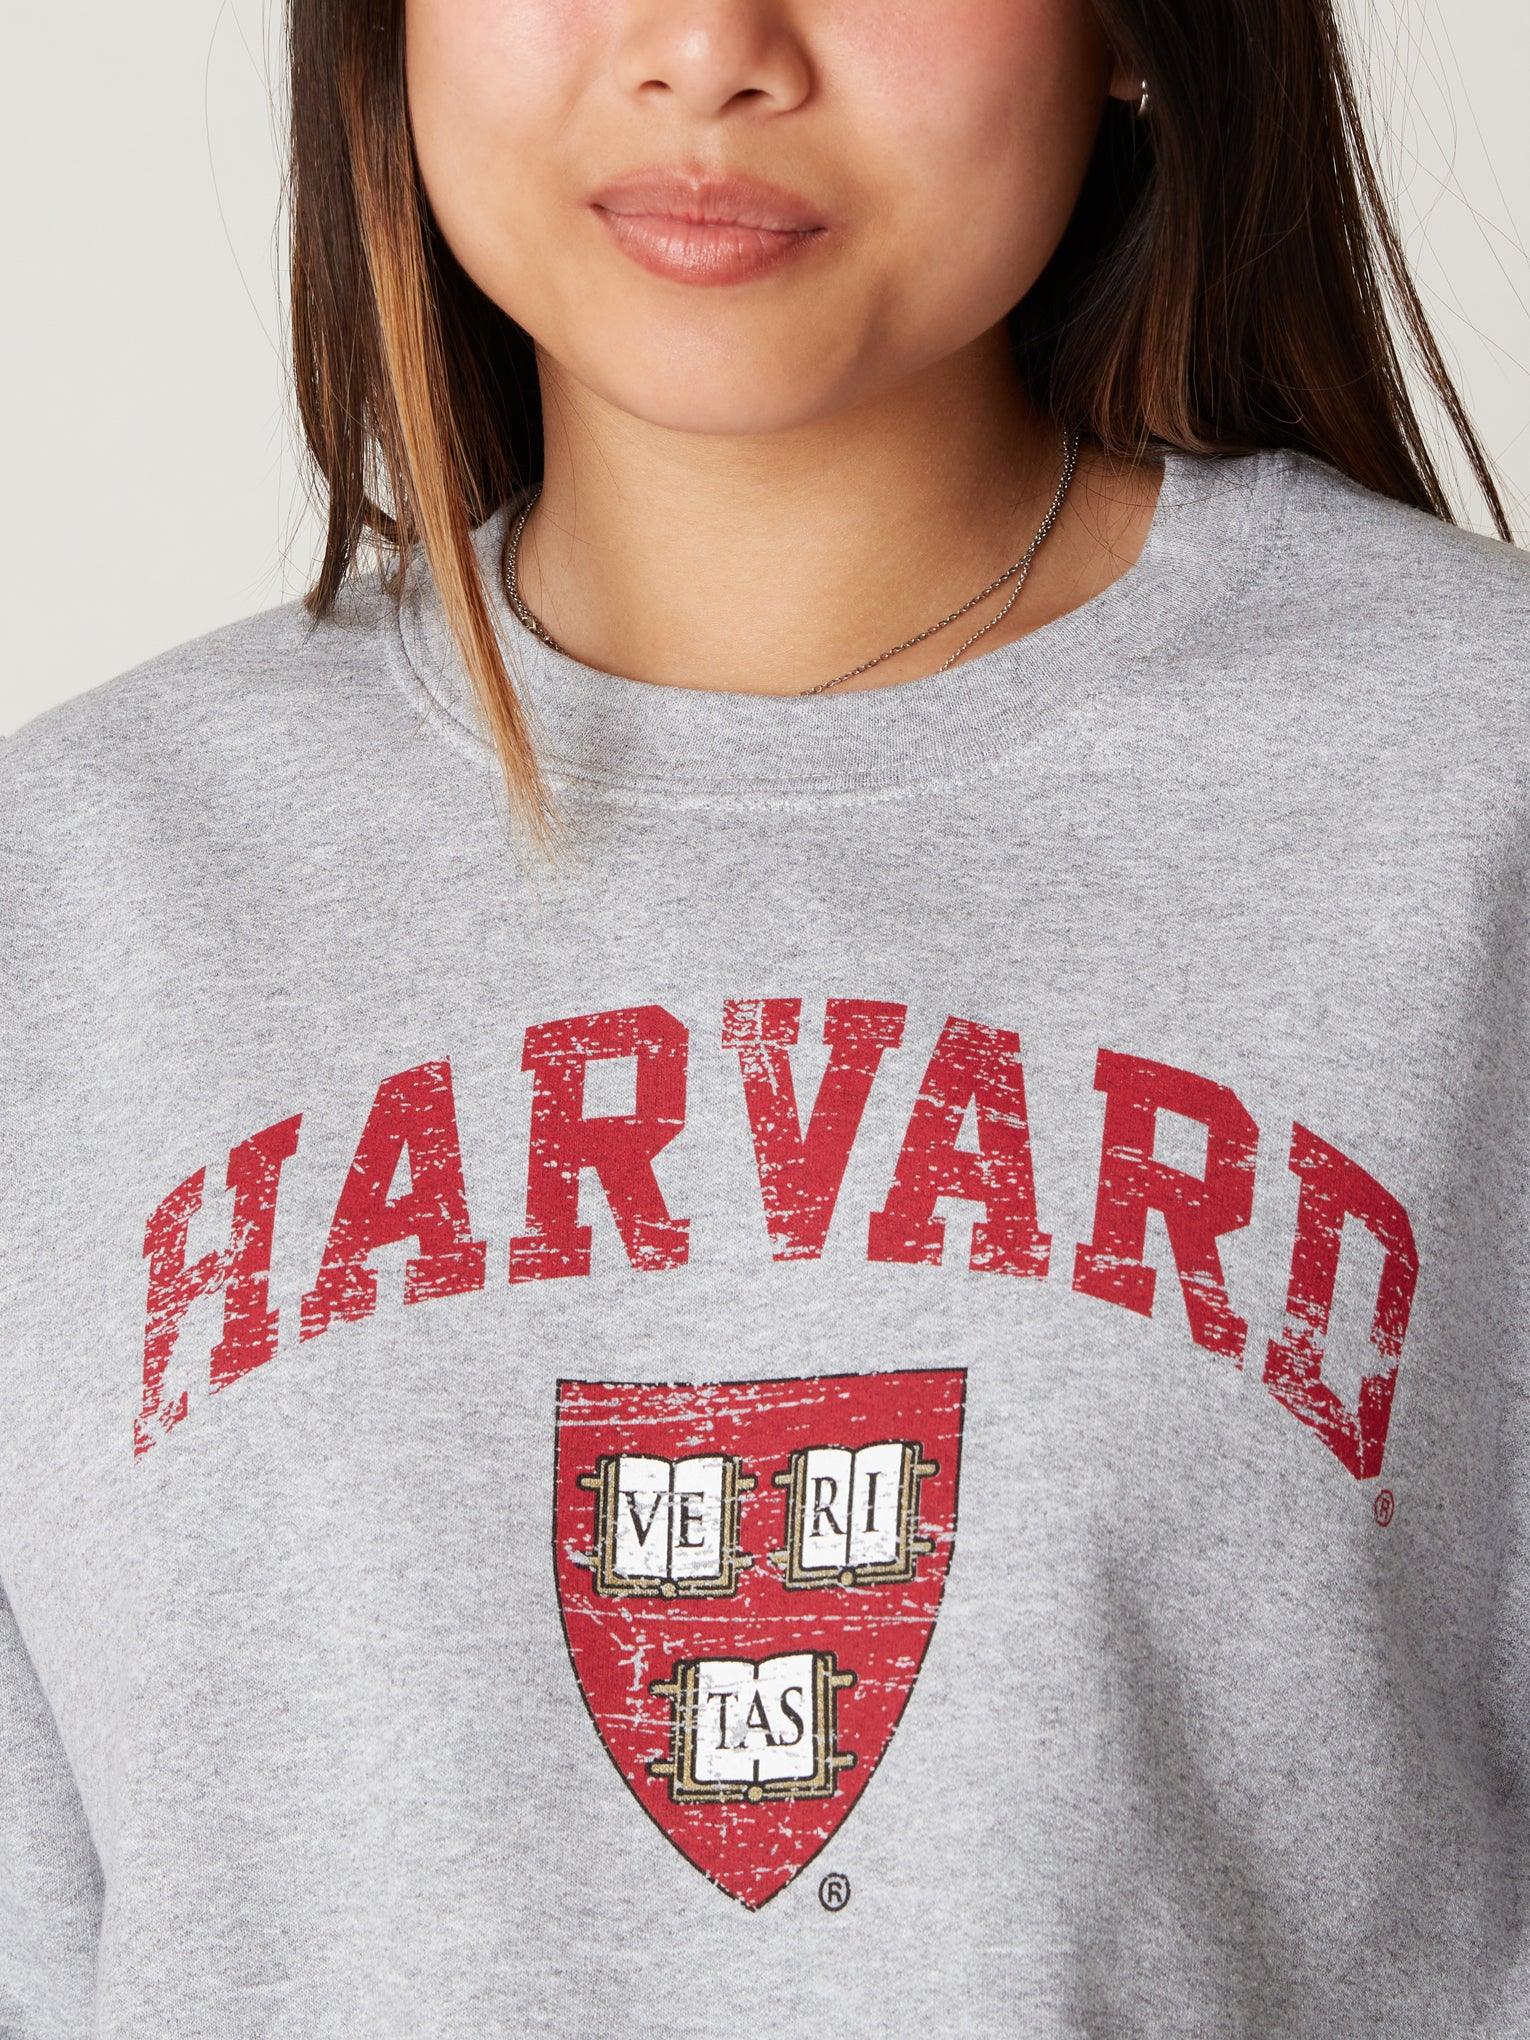 Sweatshirt with Printed Design - Dark red/Harvard - Ladies